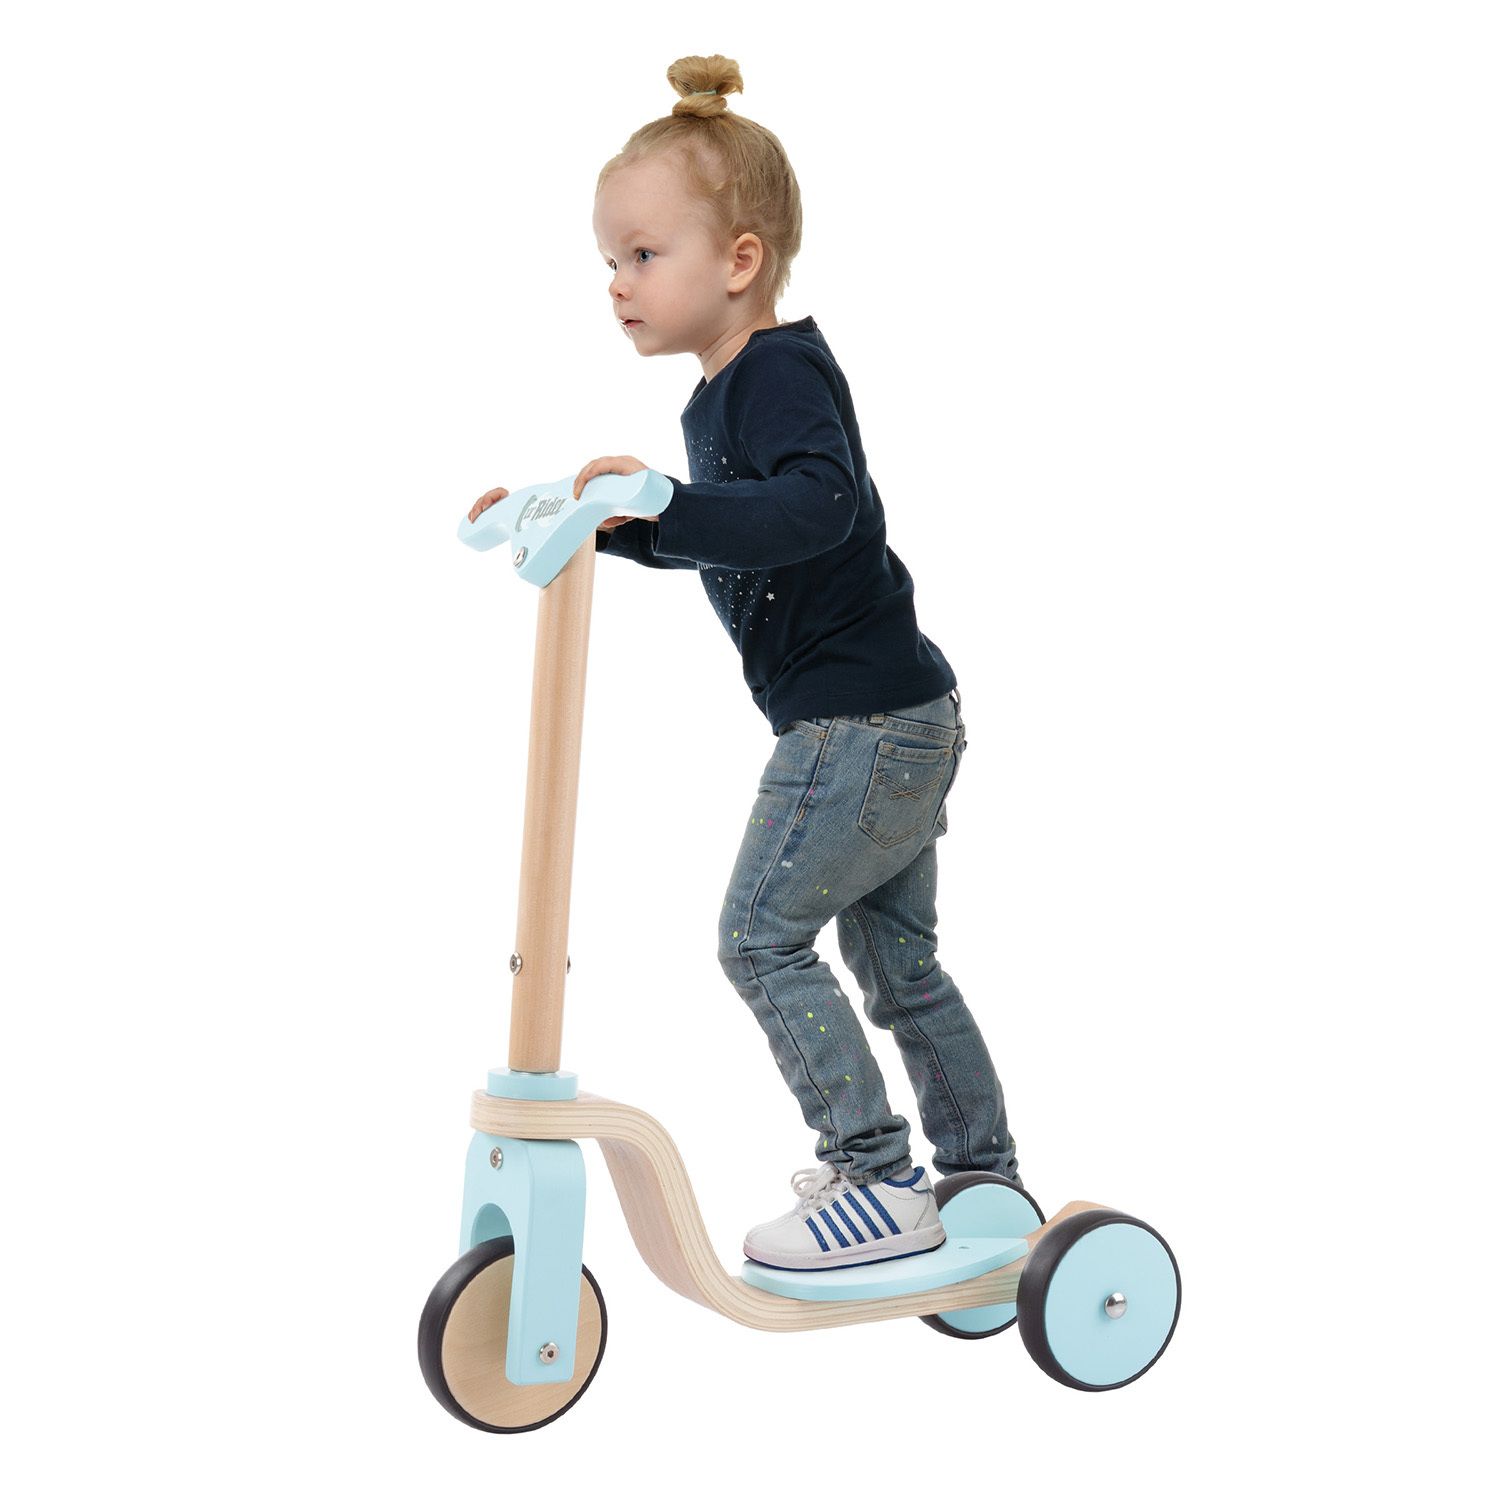 Детский деревянный 3-колесный самокат Lil' Rider для начинающих Lil' Rider